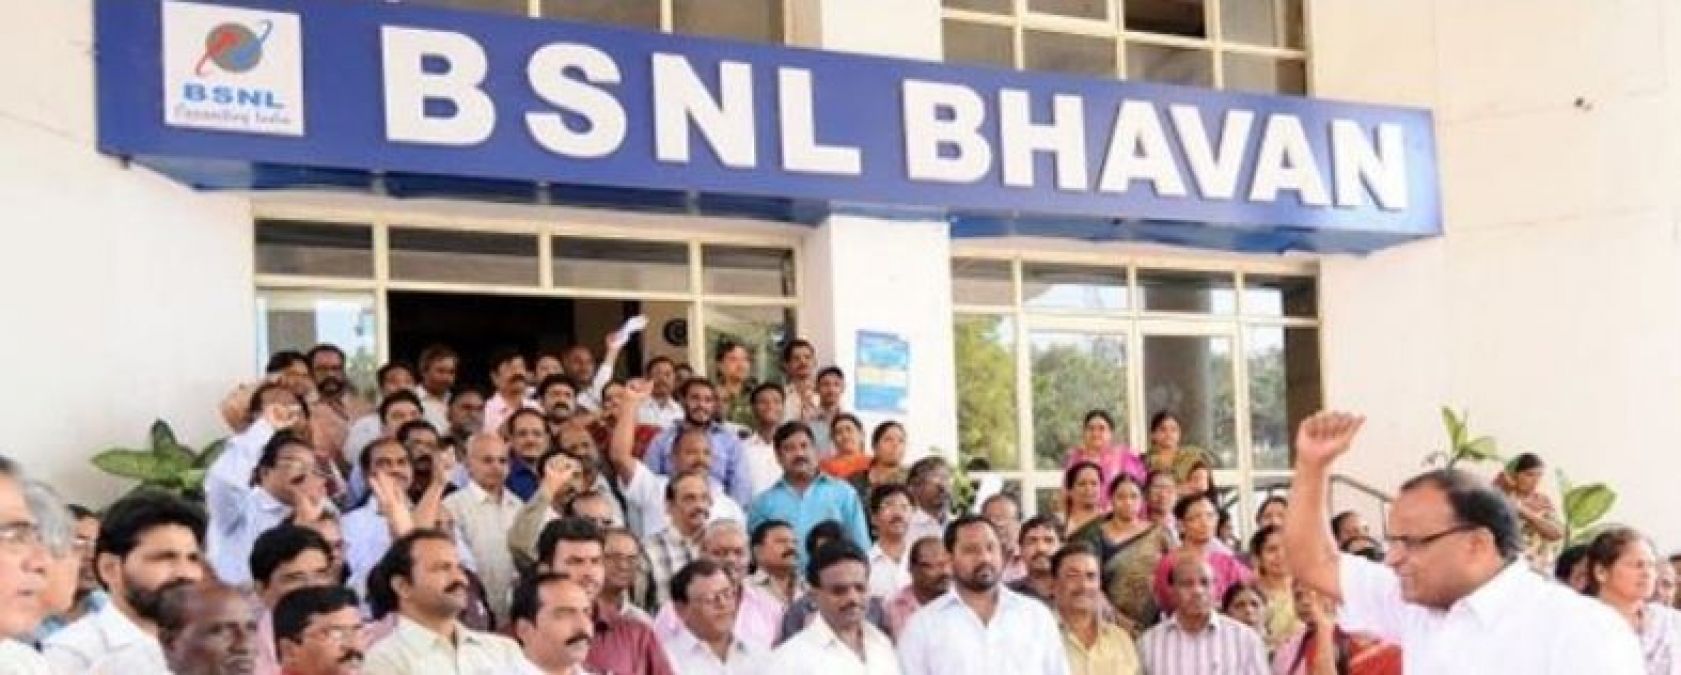 बीएसएनएल के कर्मचारियों के लिए खुशखबरी, दिवाली से पहले मिलेगा वेतन